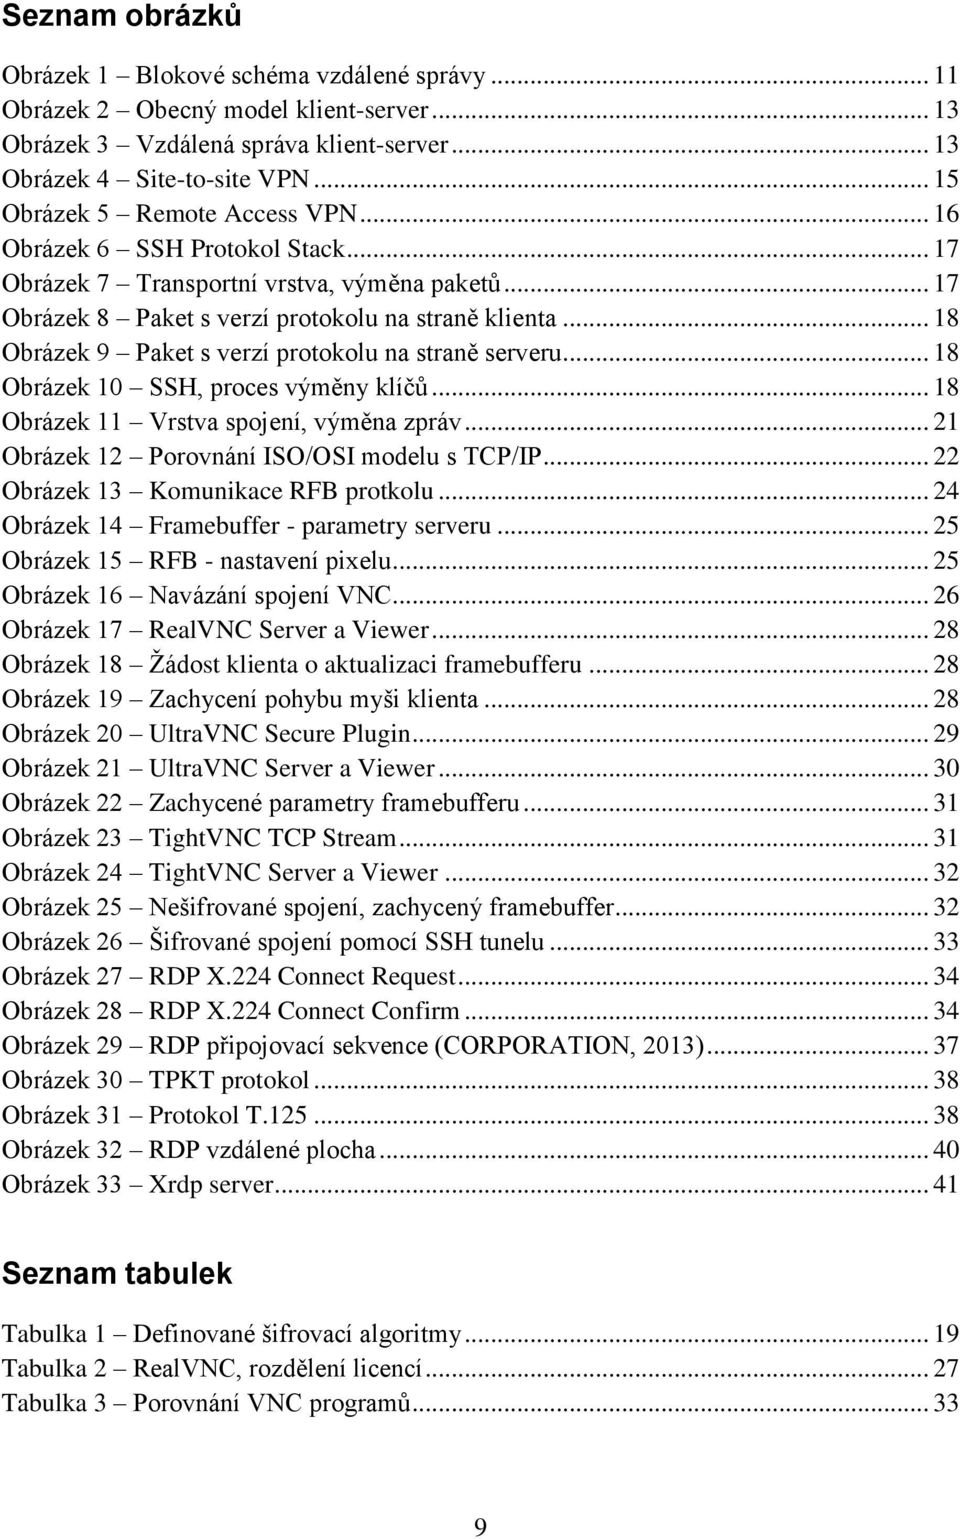 .. 18 Obrázek 9 Paket s verzí protokolu na straně serveru... 18 Obrázek 10 SSH, proces výměny klíčů... 18 Obrázek 11 Vrstva spojení, výměna zpráv... 21 Obrázek 12 Porovnání ISO/OSI modelu s TCP/IP.